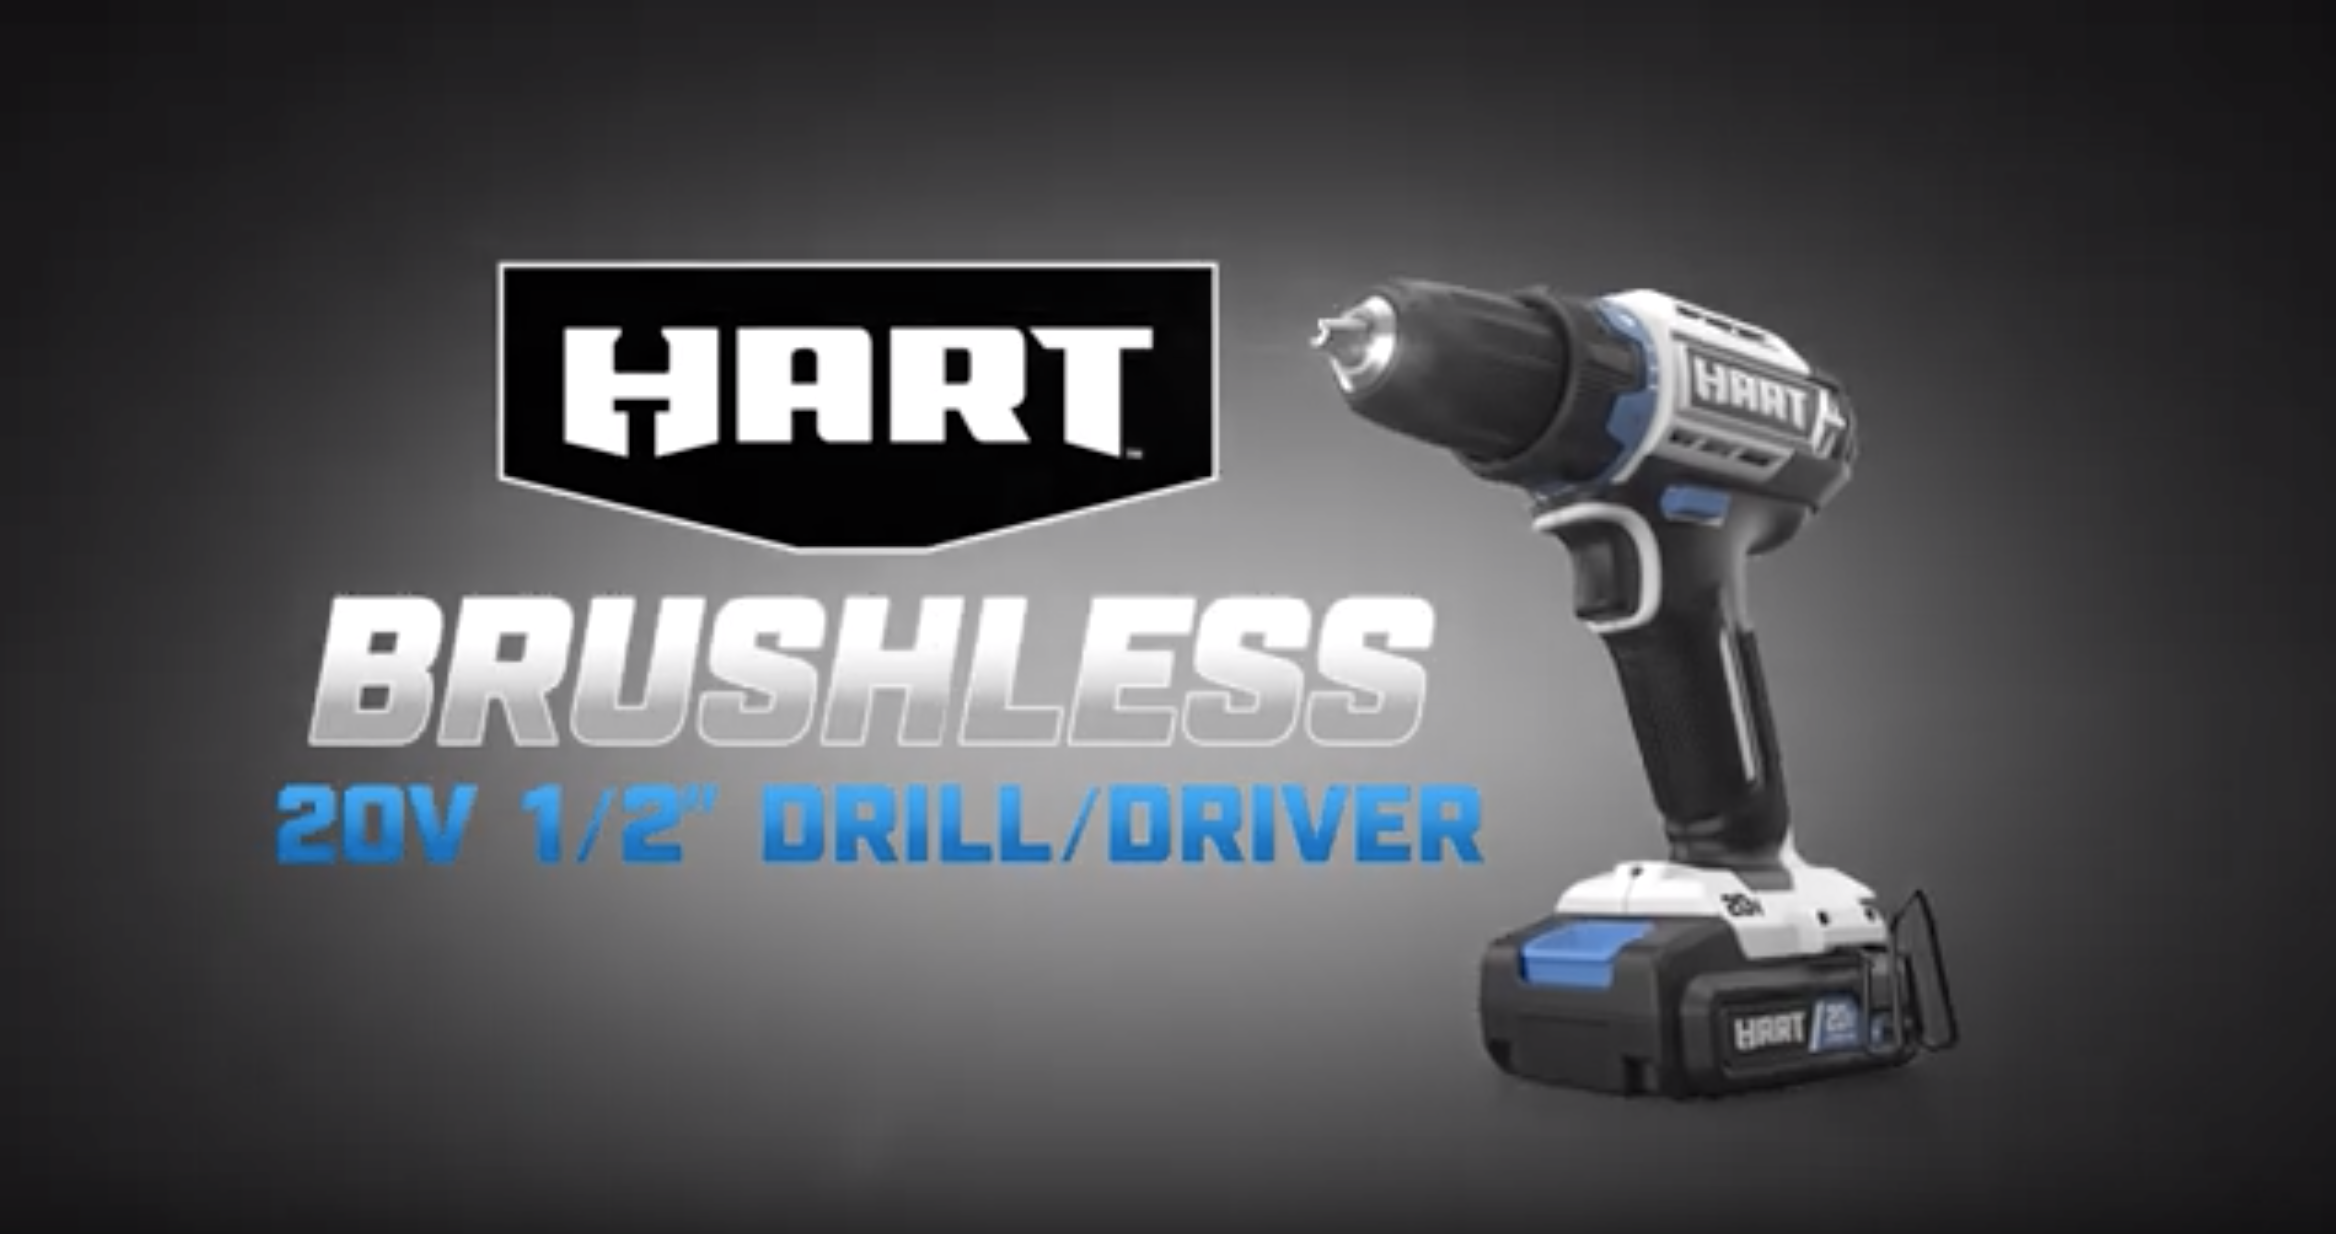 20V 1/2" Brushless Cordless Drill/Driver Kitbanner image